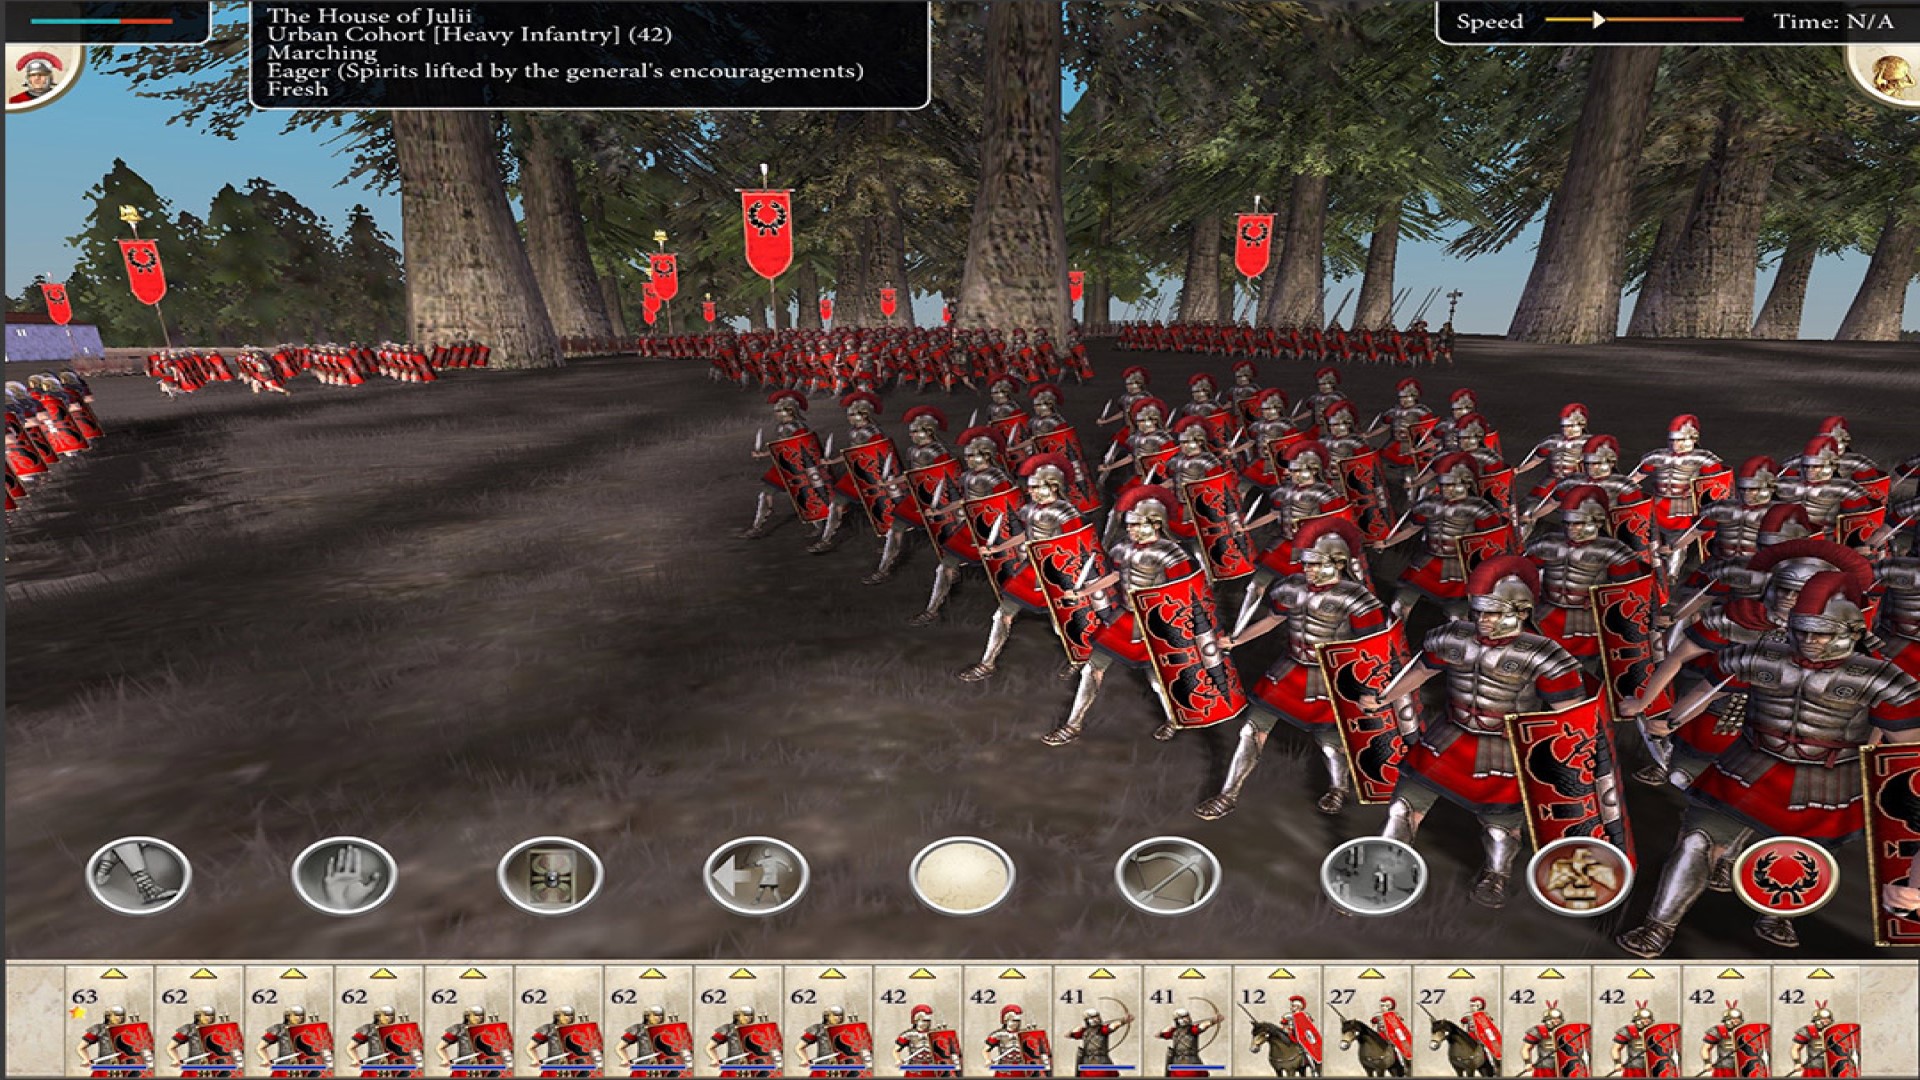 משחקי אסטרטגיה ניידים הטובים ביותר: רומא: מלחמה מוחלטת. תמונה מציגה חיילים רומיים צועדים לאורך